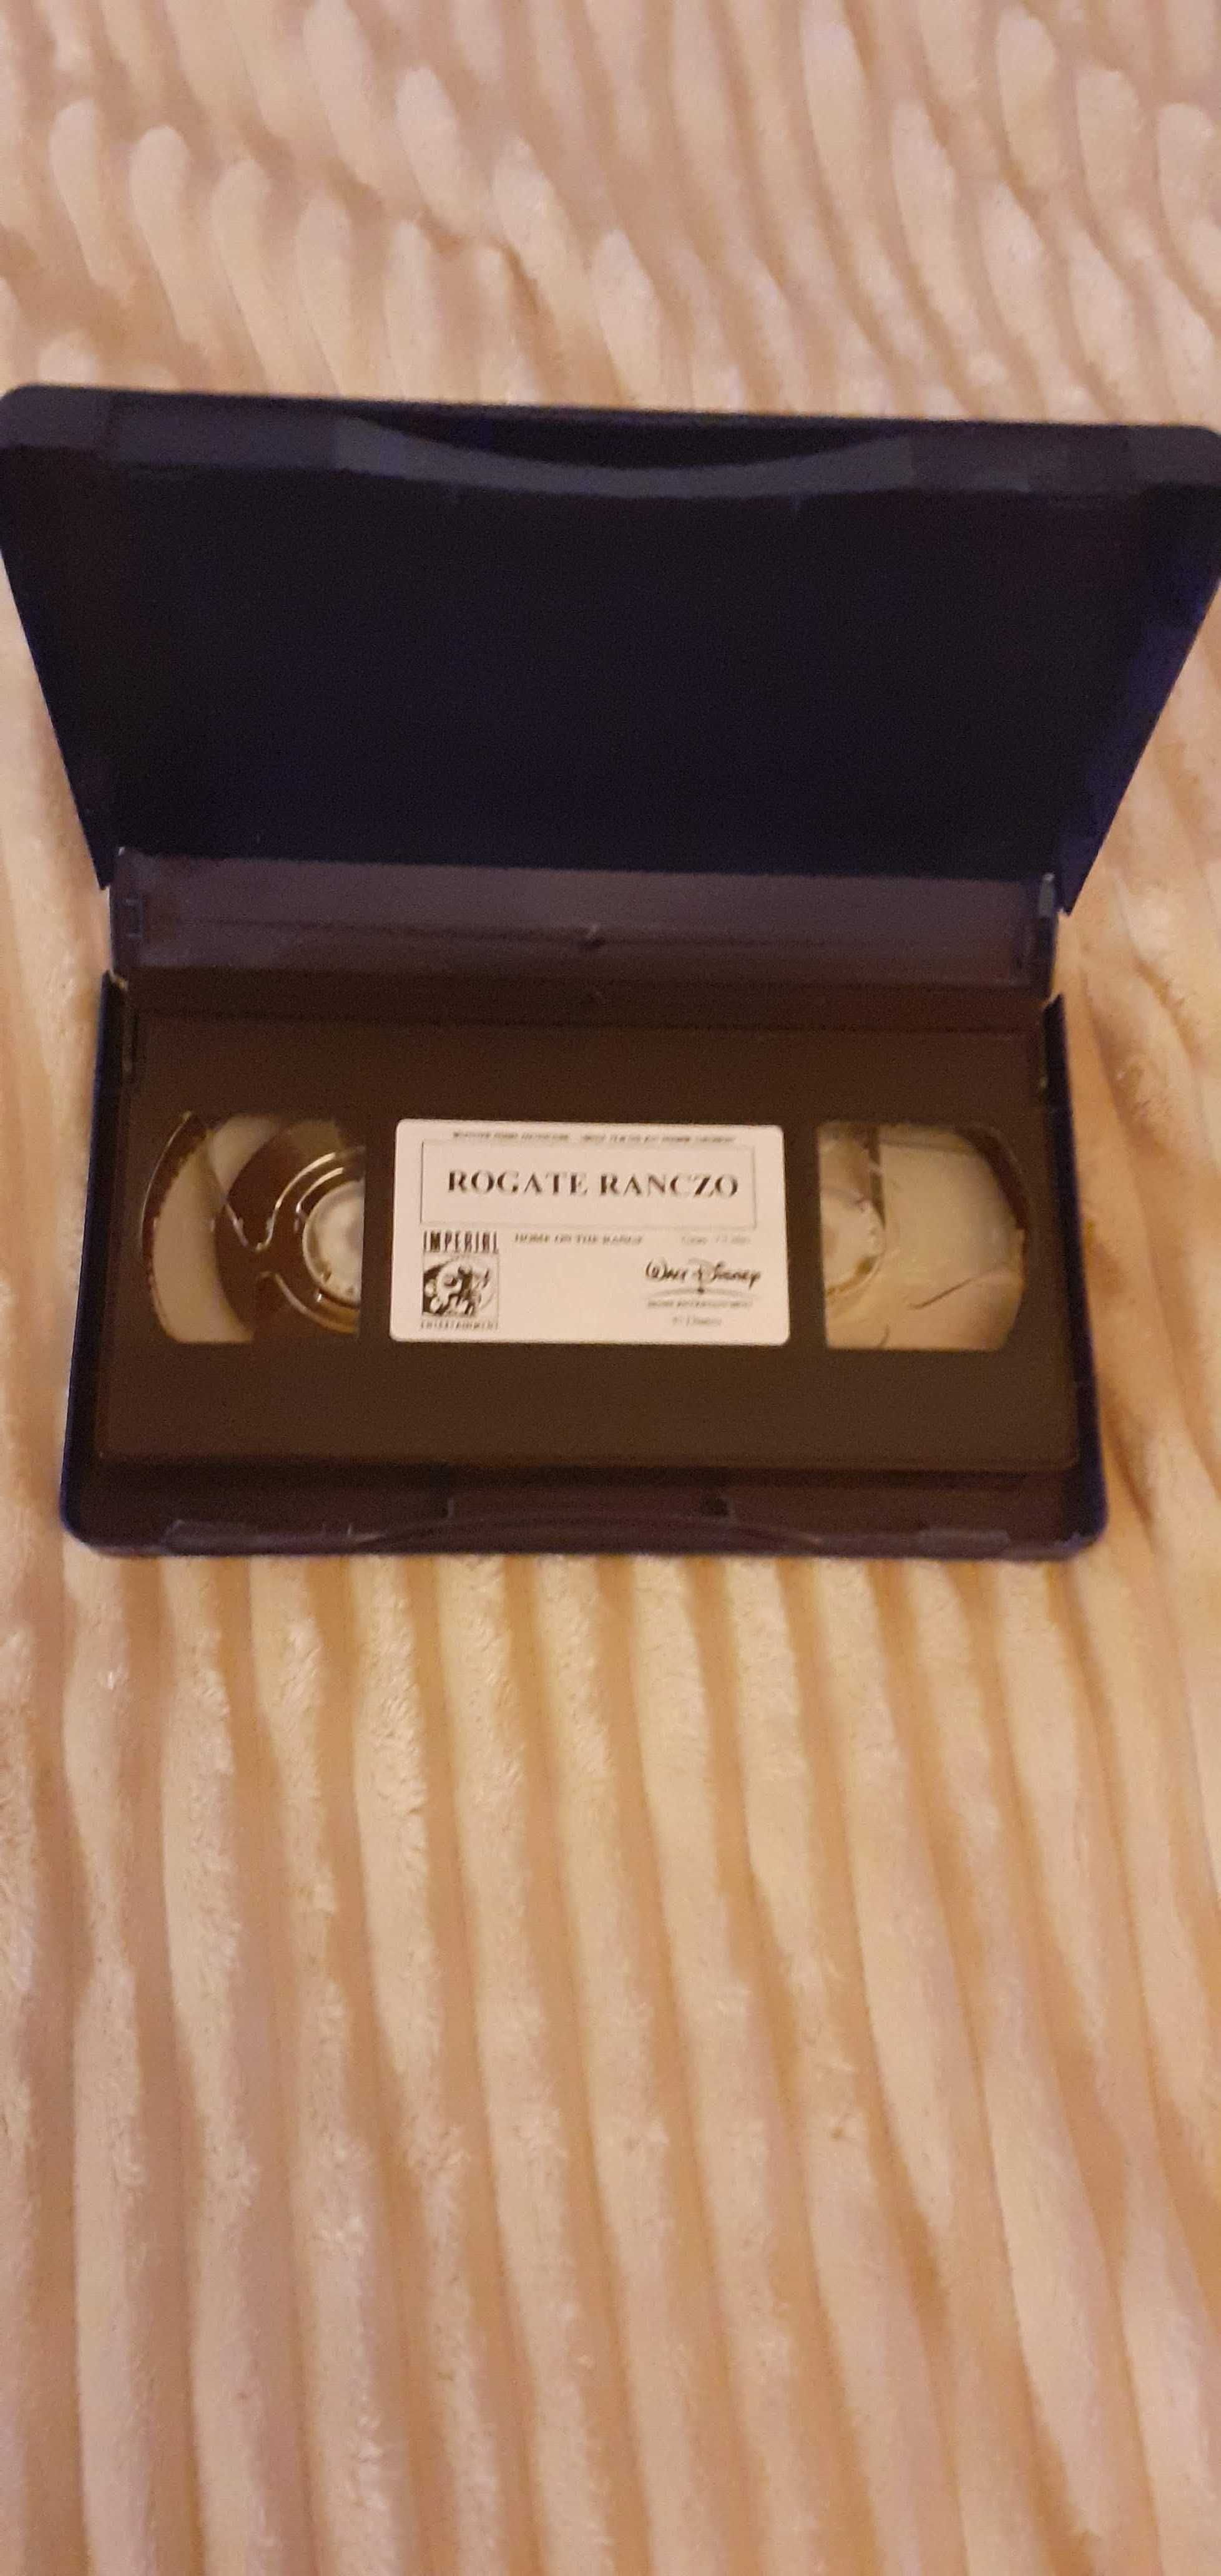 Kaseta Video VHS "Rogate Ranczo".